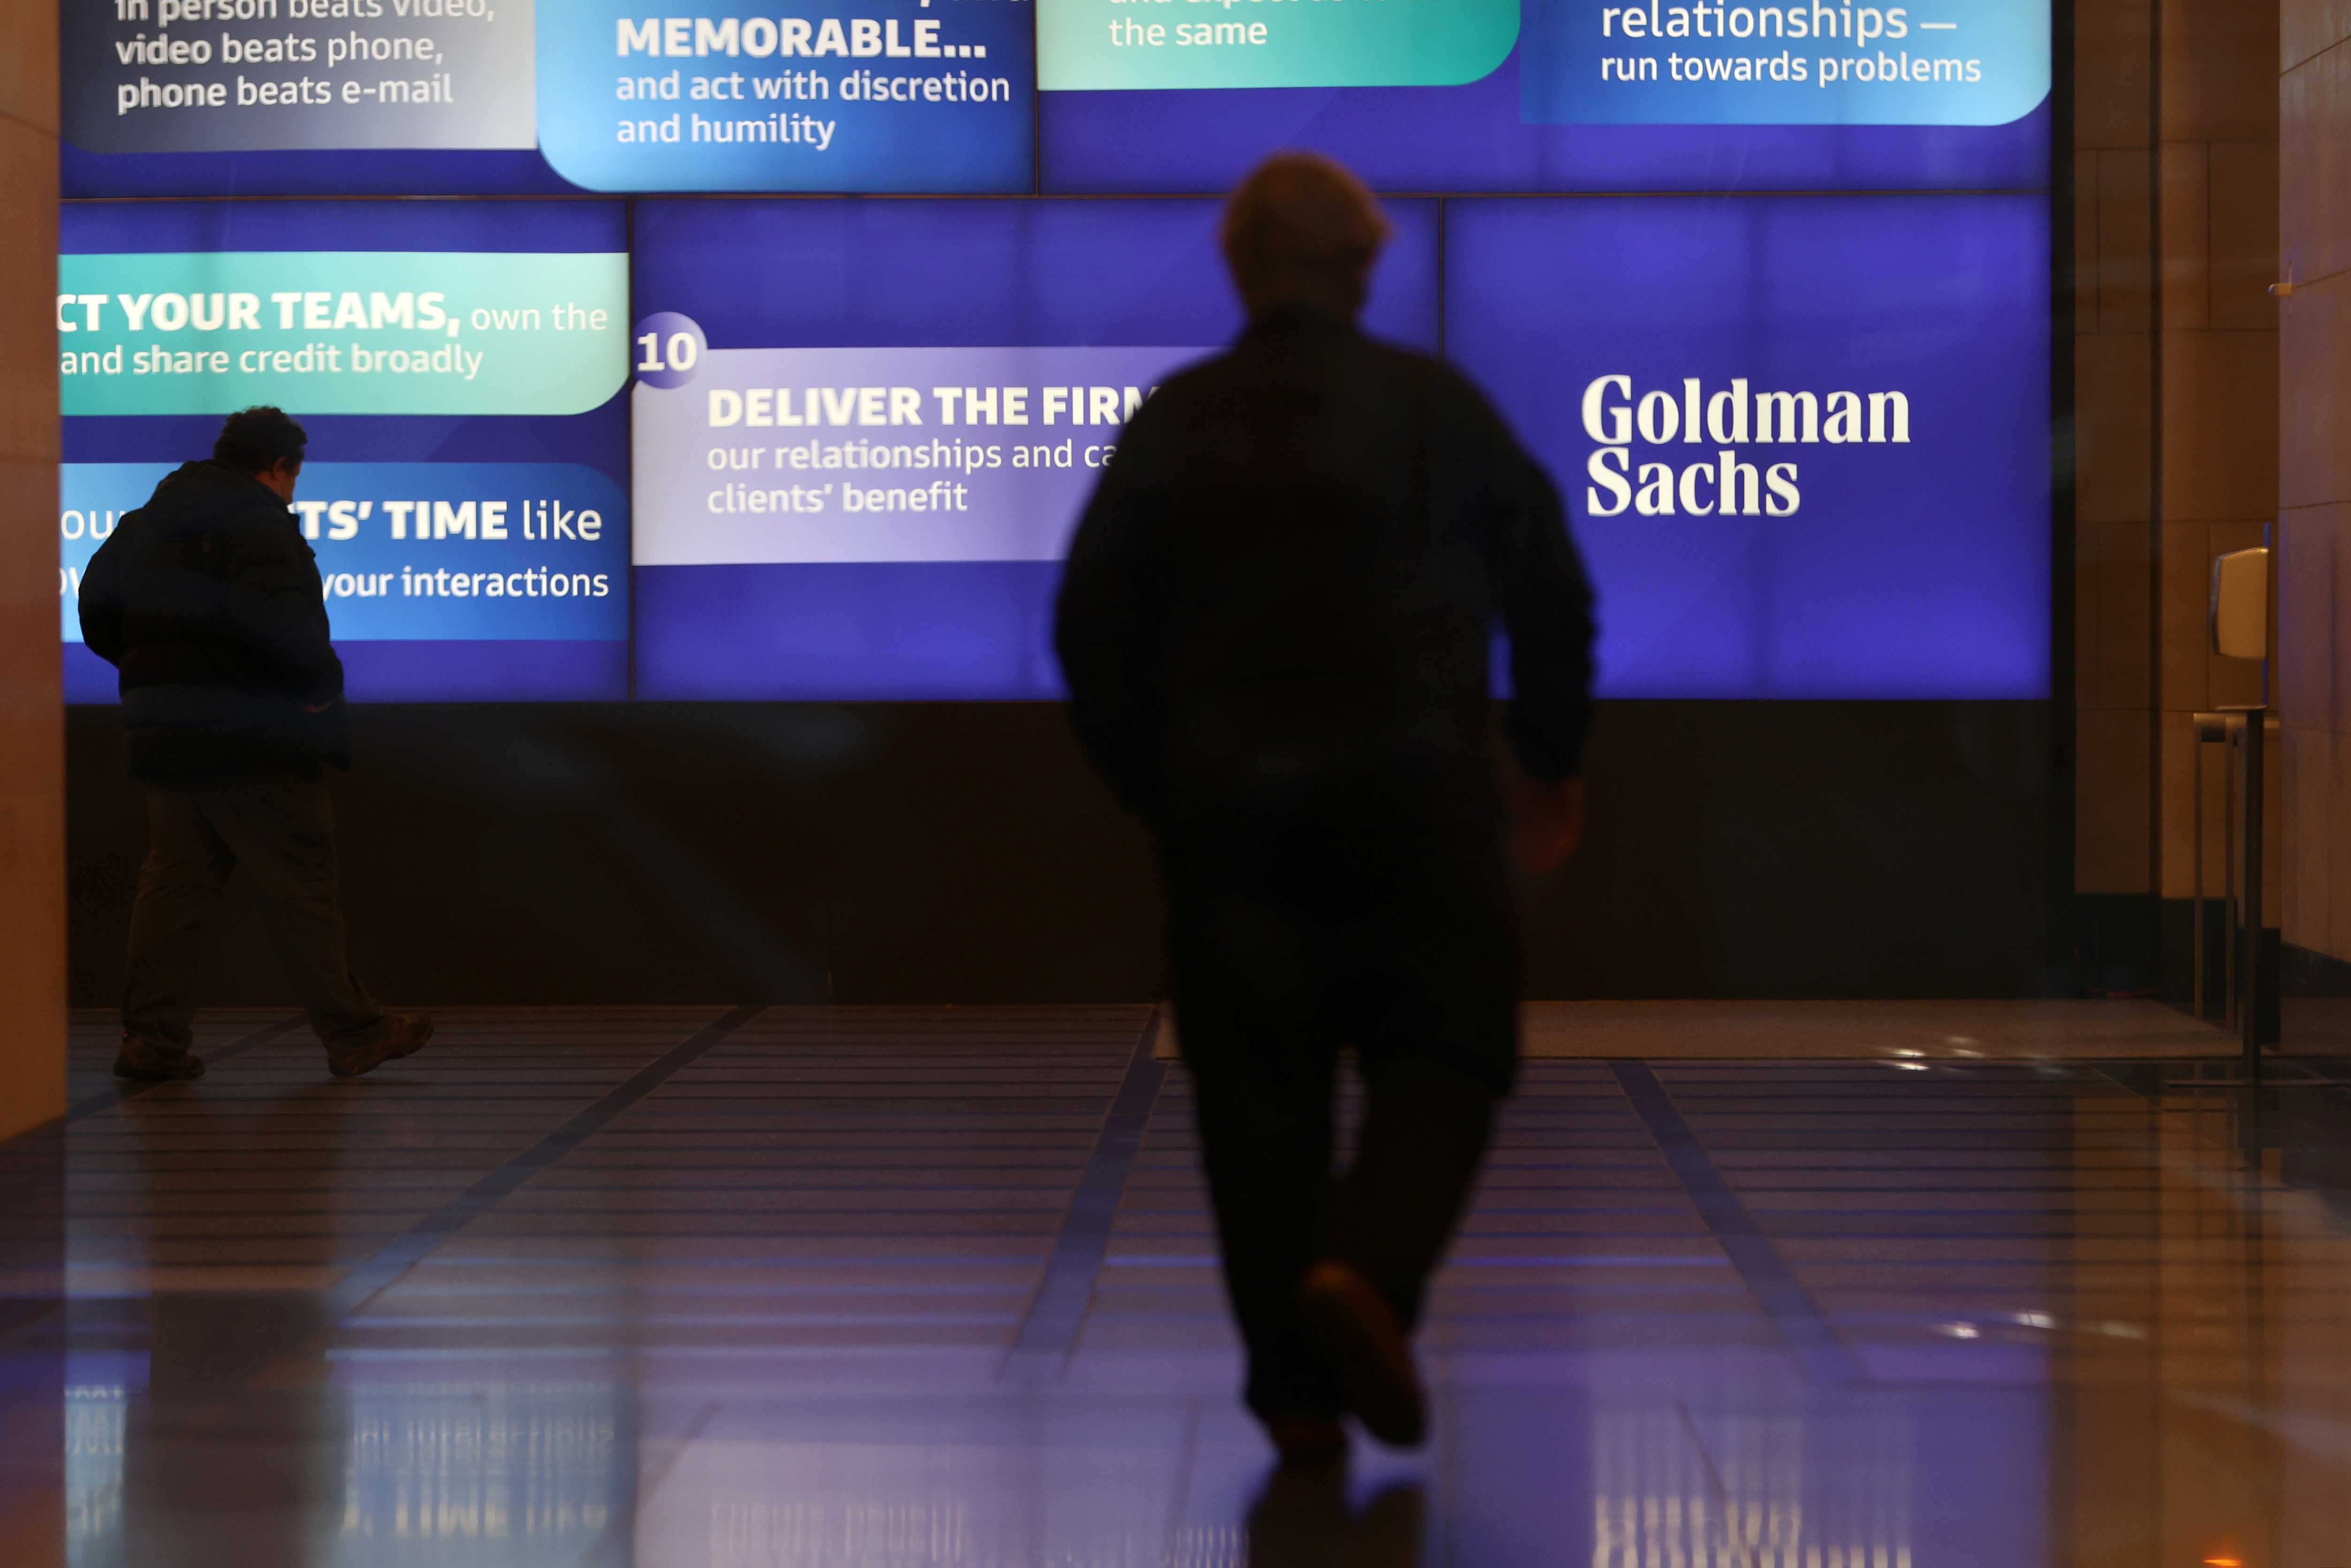 Menschen gehen am globalen Hauptsitz von Goldman Sachs in Manhattan, New York vorbei